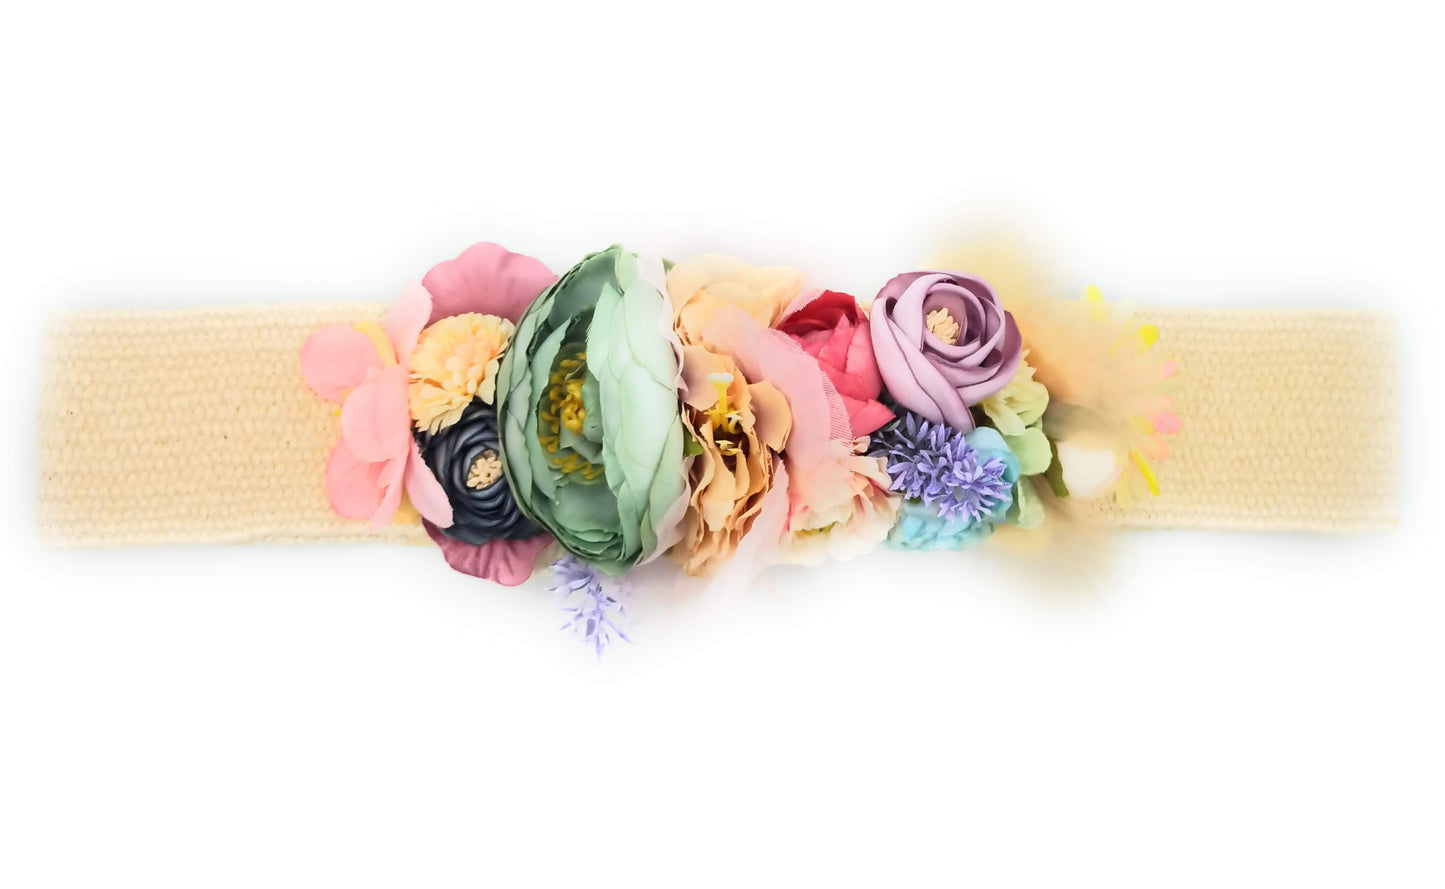 Cinturón de Flores · Rafia Multi Pasteles